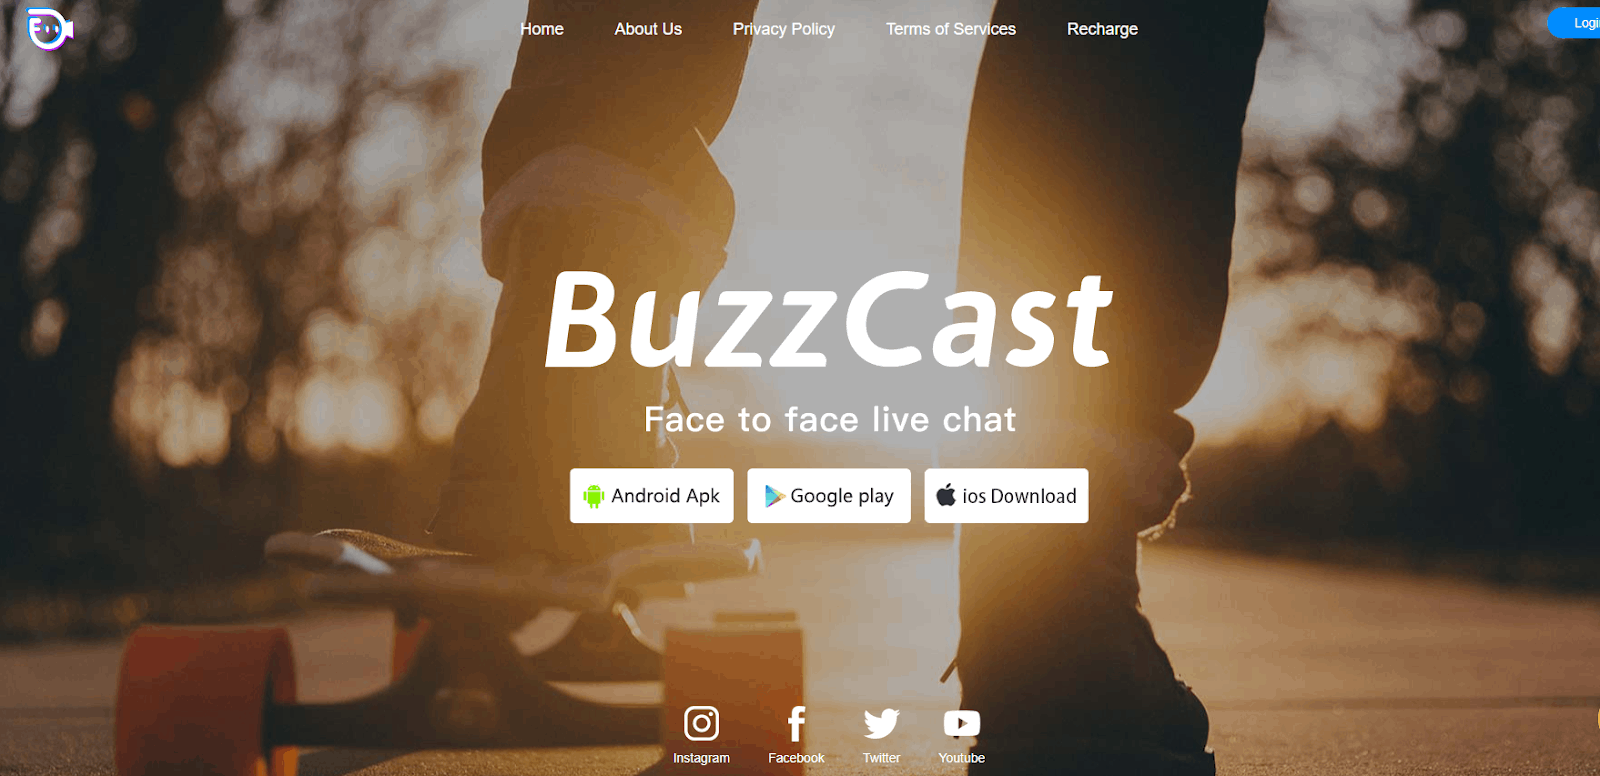 BuzzCast App - Meet New Friends